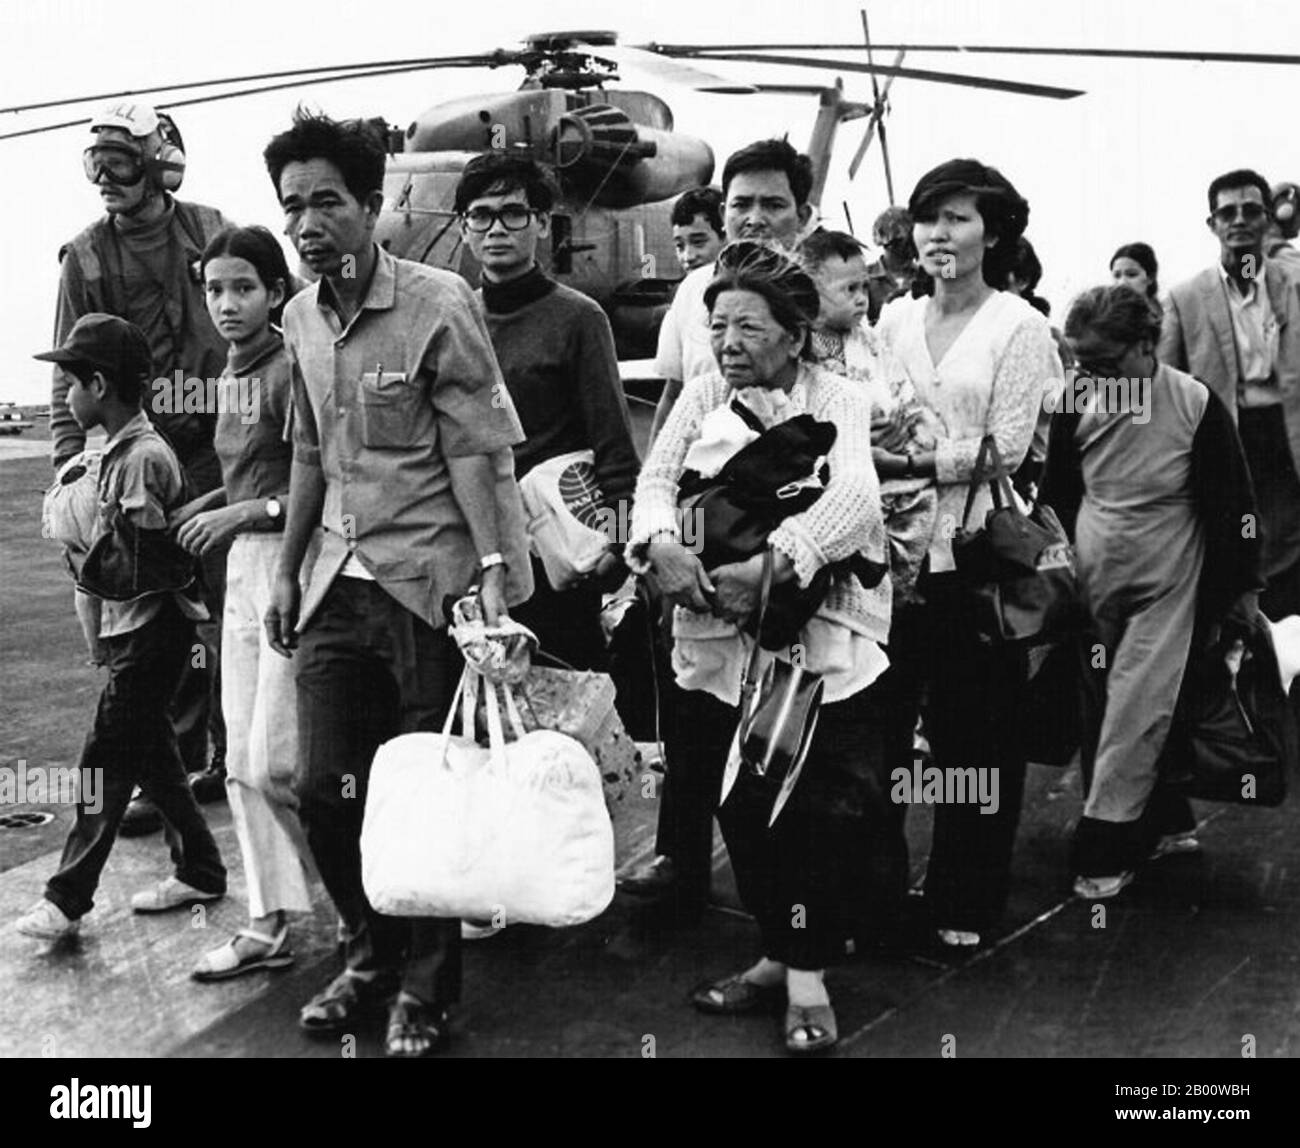 Vietnam: Südvietnamesische Flüchtlinge, die vor der kommunistischen Eroberung von Saigon im Jahr 1975 fliehen, kommen in Camp Foster, Okinawa, Japan an. Südvietnamesische Flüchtlinge laufen über ein US-Navy-Schiff. Operation Frequent Wind, der letzte Betrieb in Saigon, begann am 29. April 1975. Während einer fast ständigen Explosion von Explosionen luden die Marines amerikanische und vietnamesische Zivilisten, die um ihr Leben fürchteten, auf Hubschrauber, die sie zu wartenden Flugzeugträgern brachten. Die Schiffe der Marine brachten sie auf die Philippinen und schließlich nach Camp Pendleton, Kalifornien. (Offizieller US-Navy-Phot im Public Domain-Bereich). Stockfoto